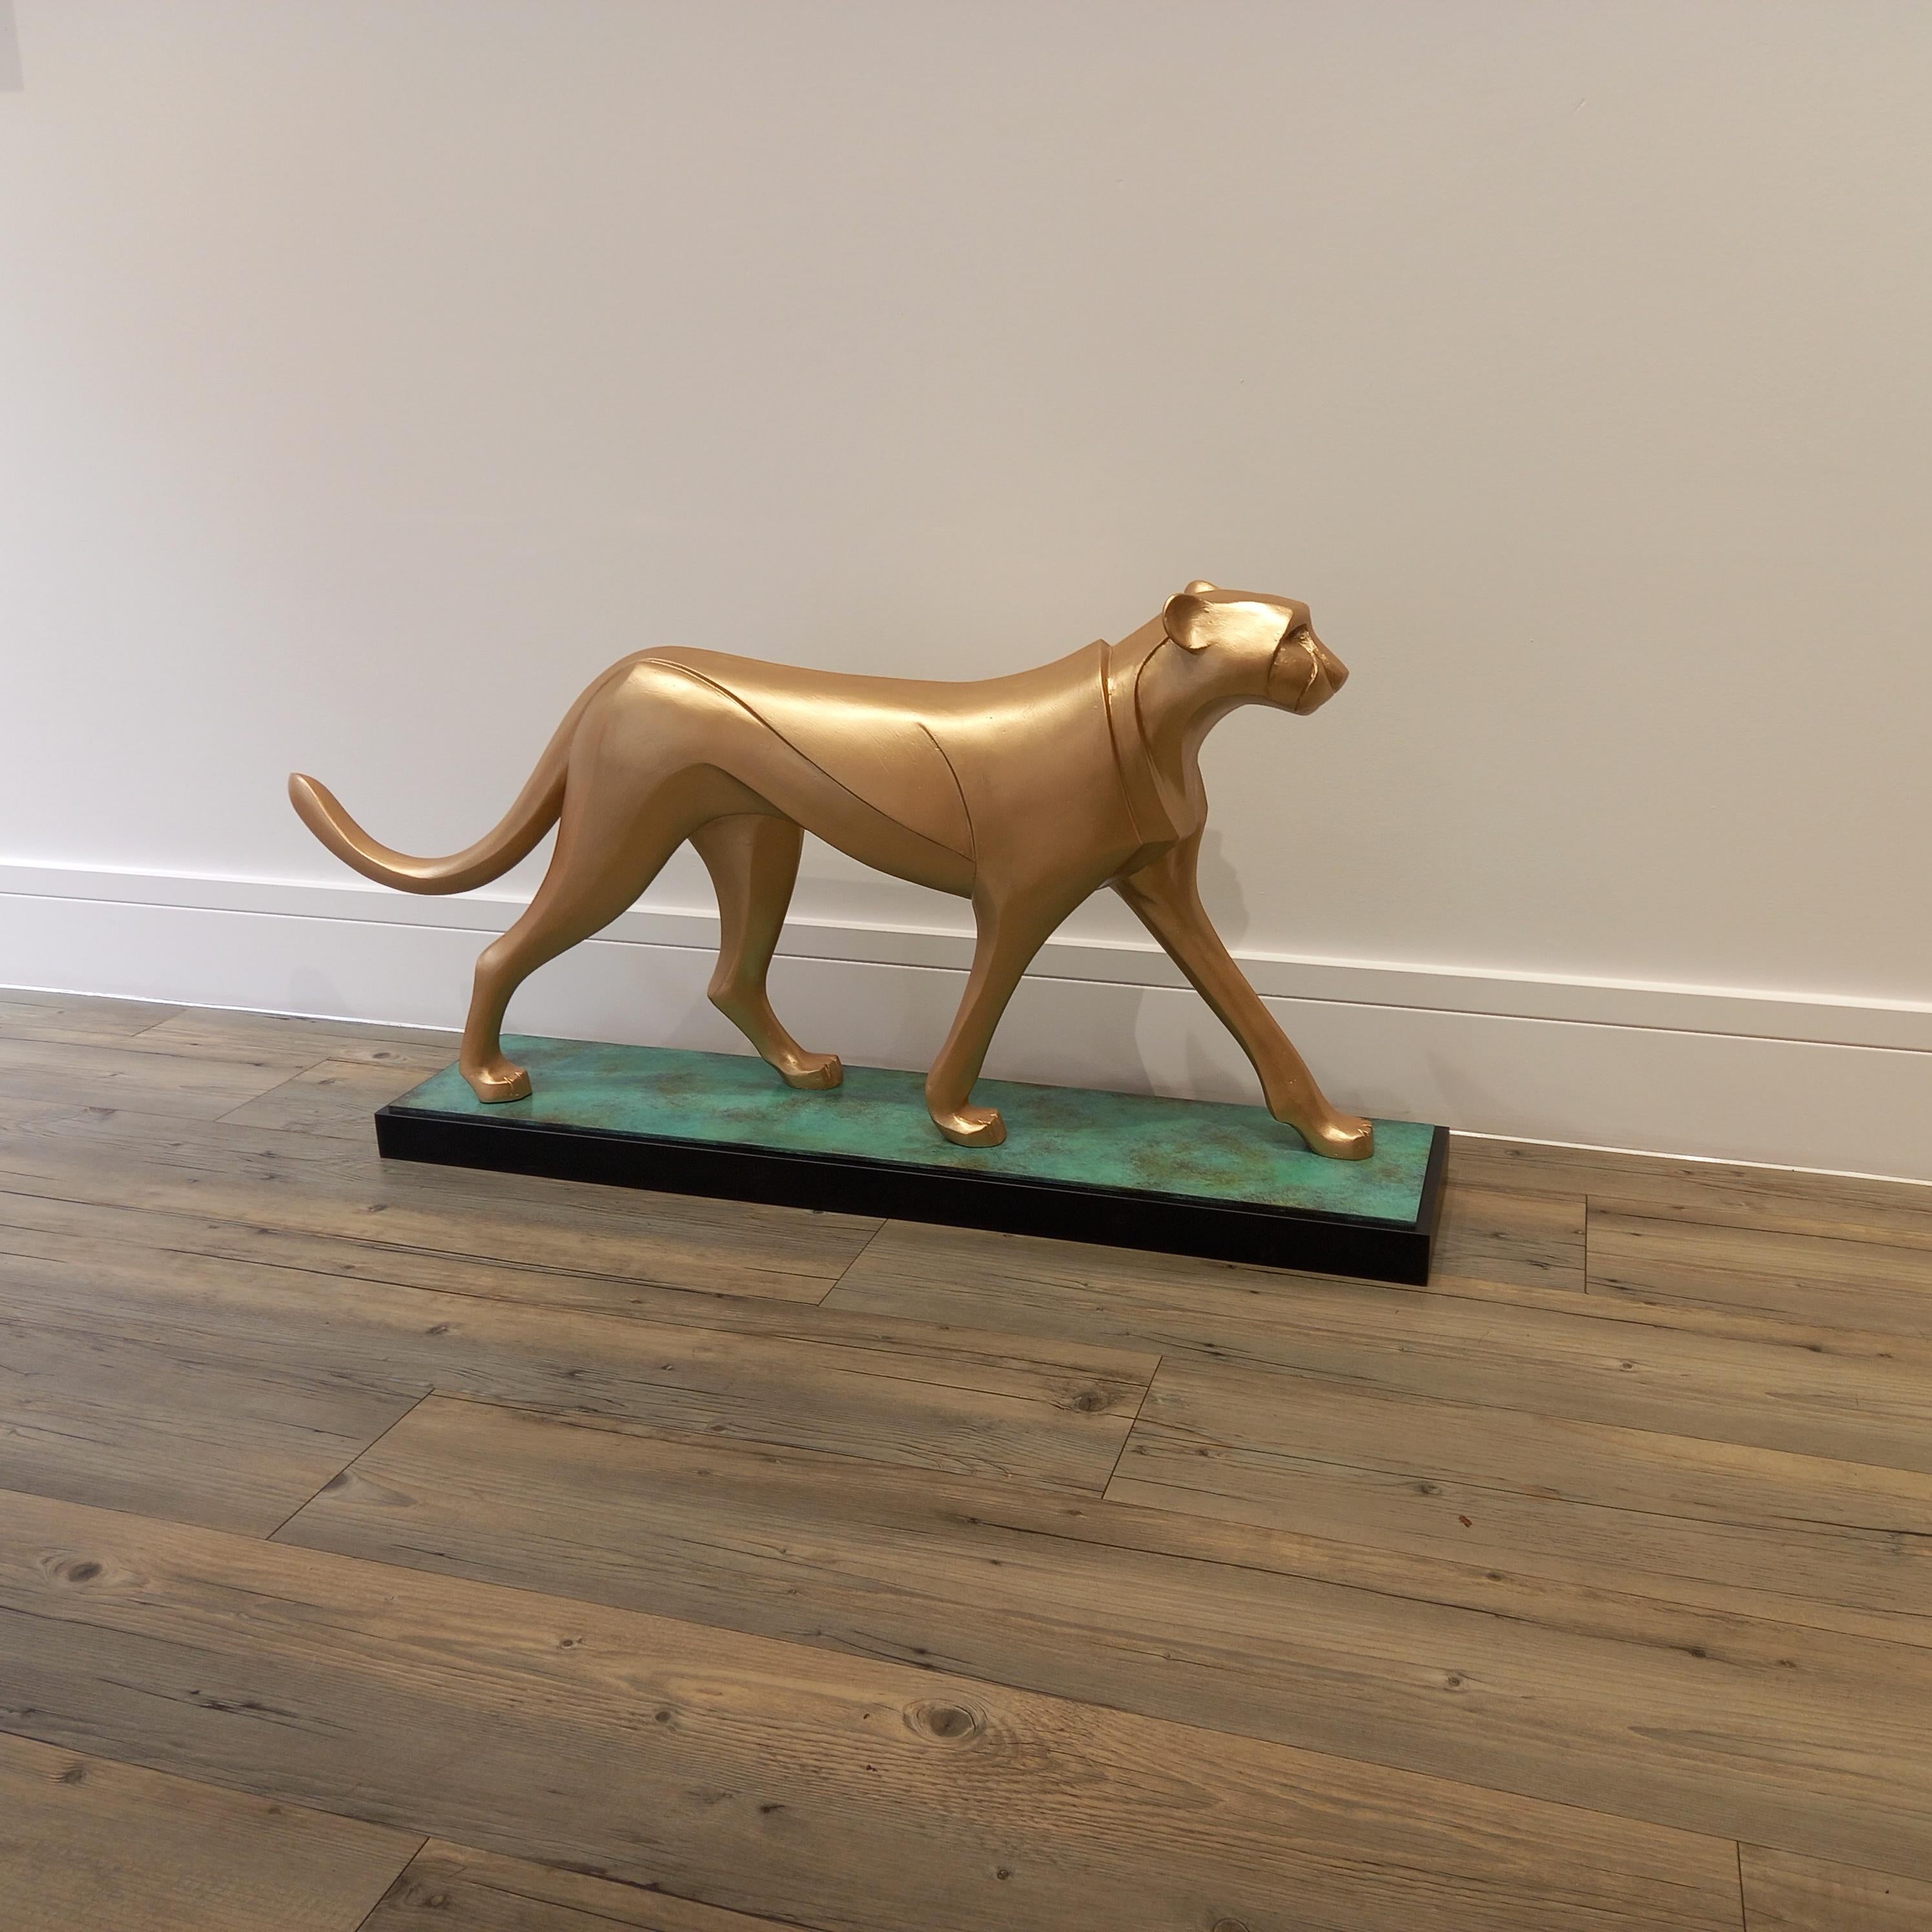 Cheetah - Sculpture by Barry Davies 